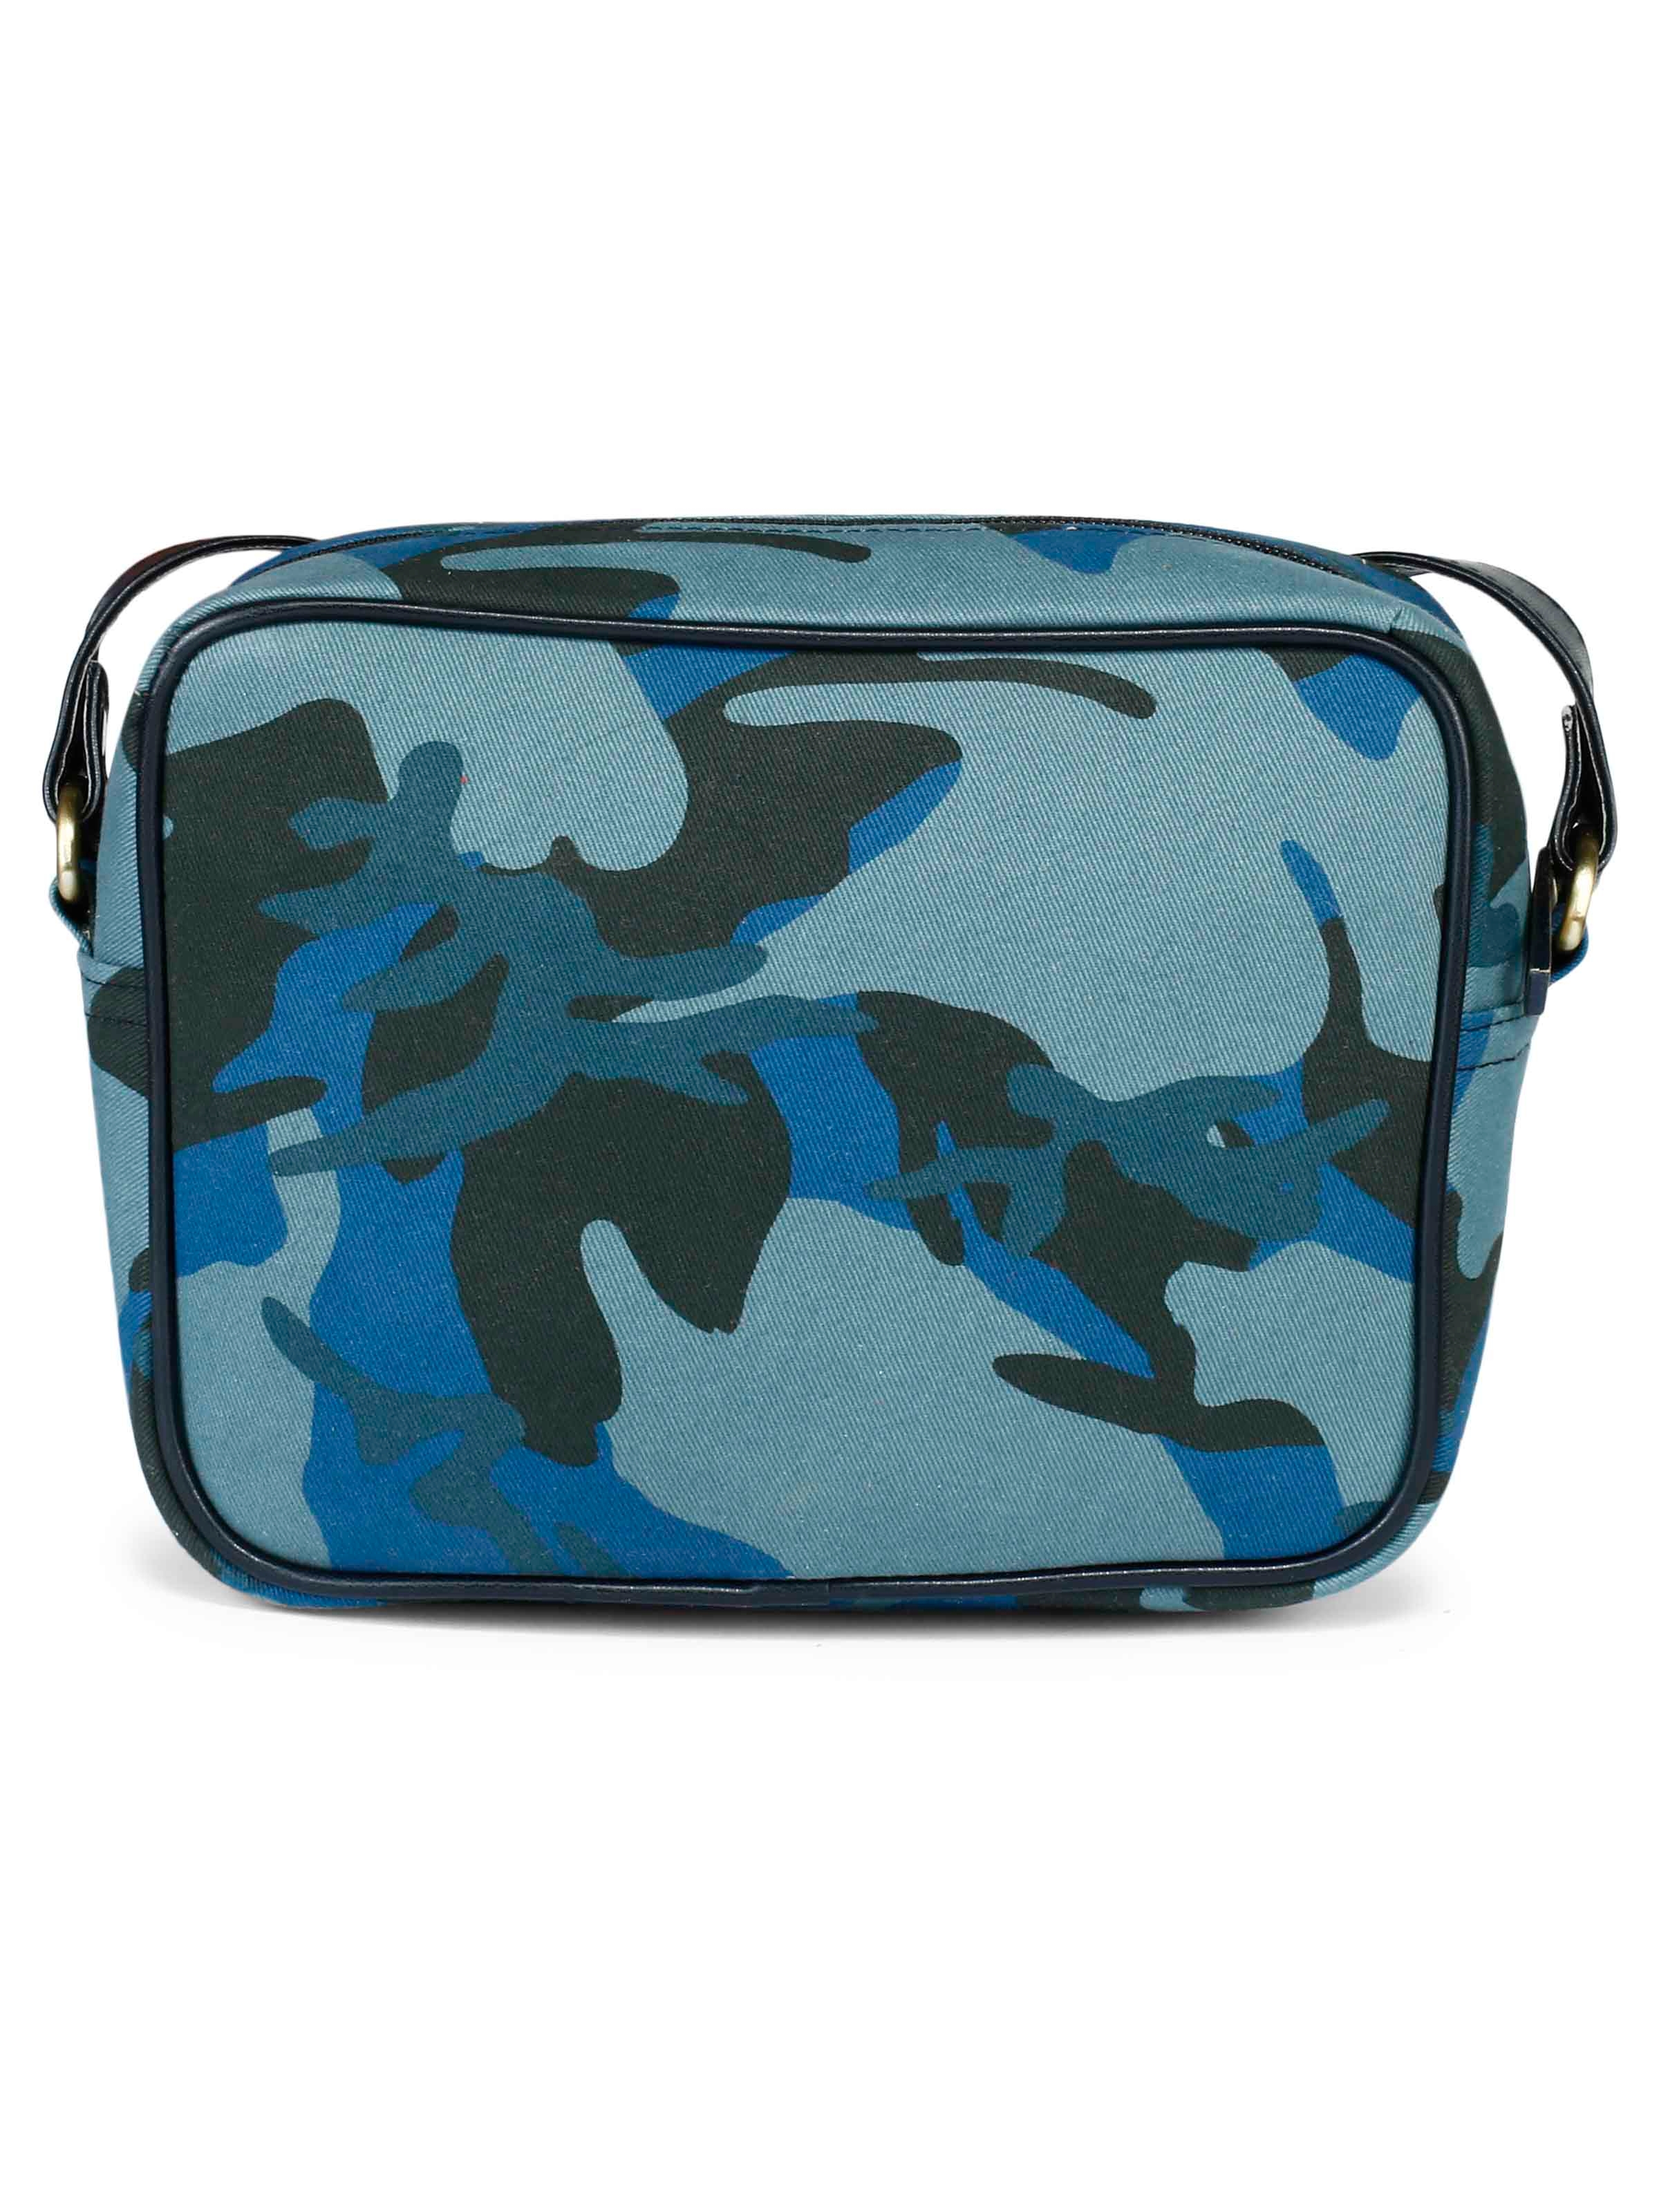 Blah camouflage sling bag